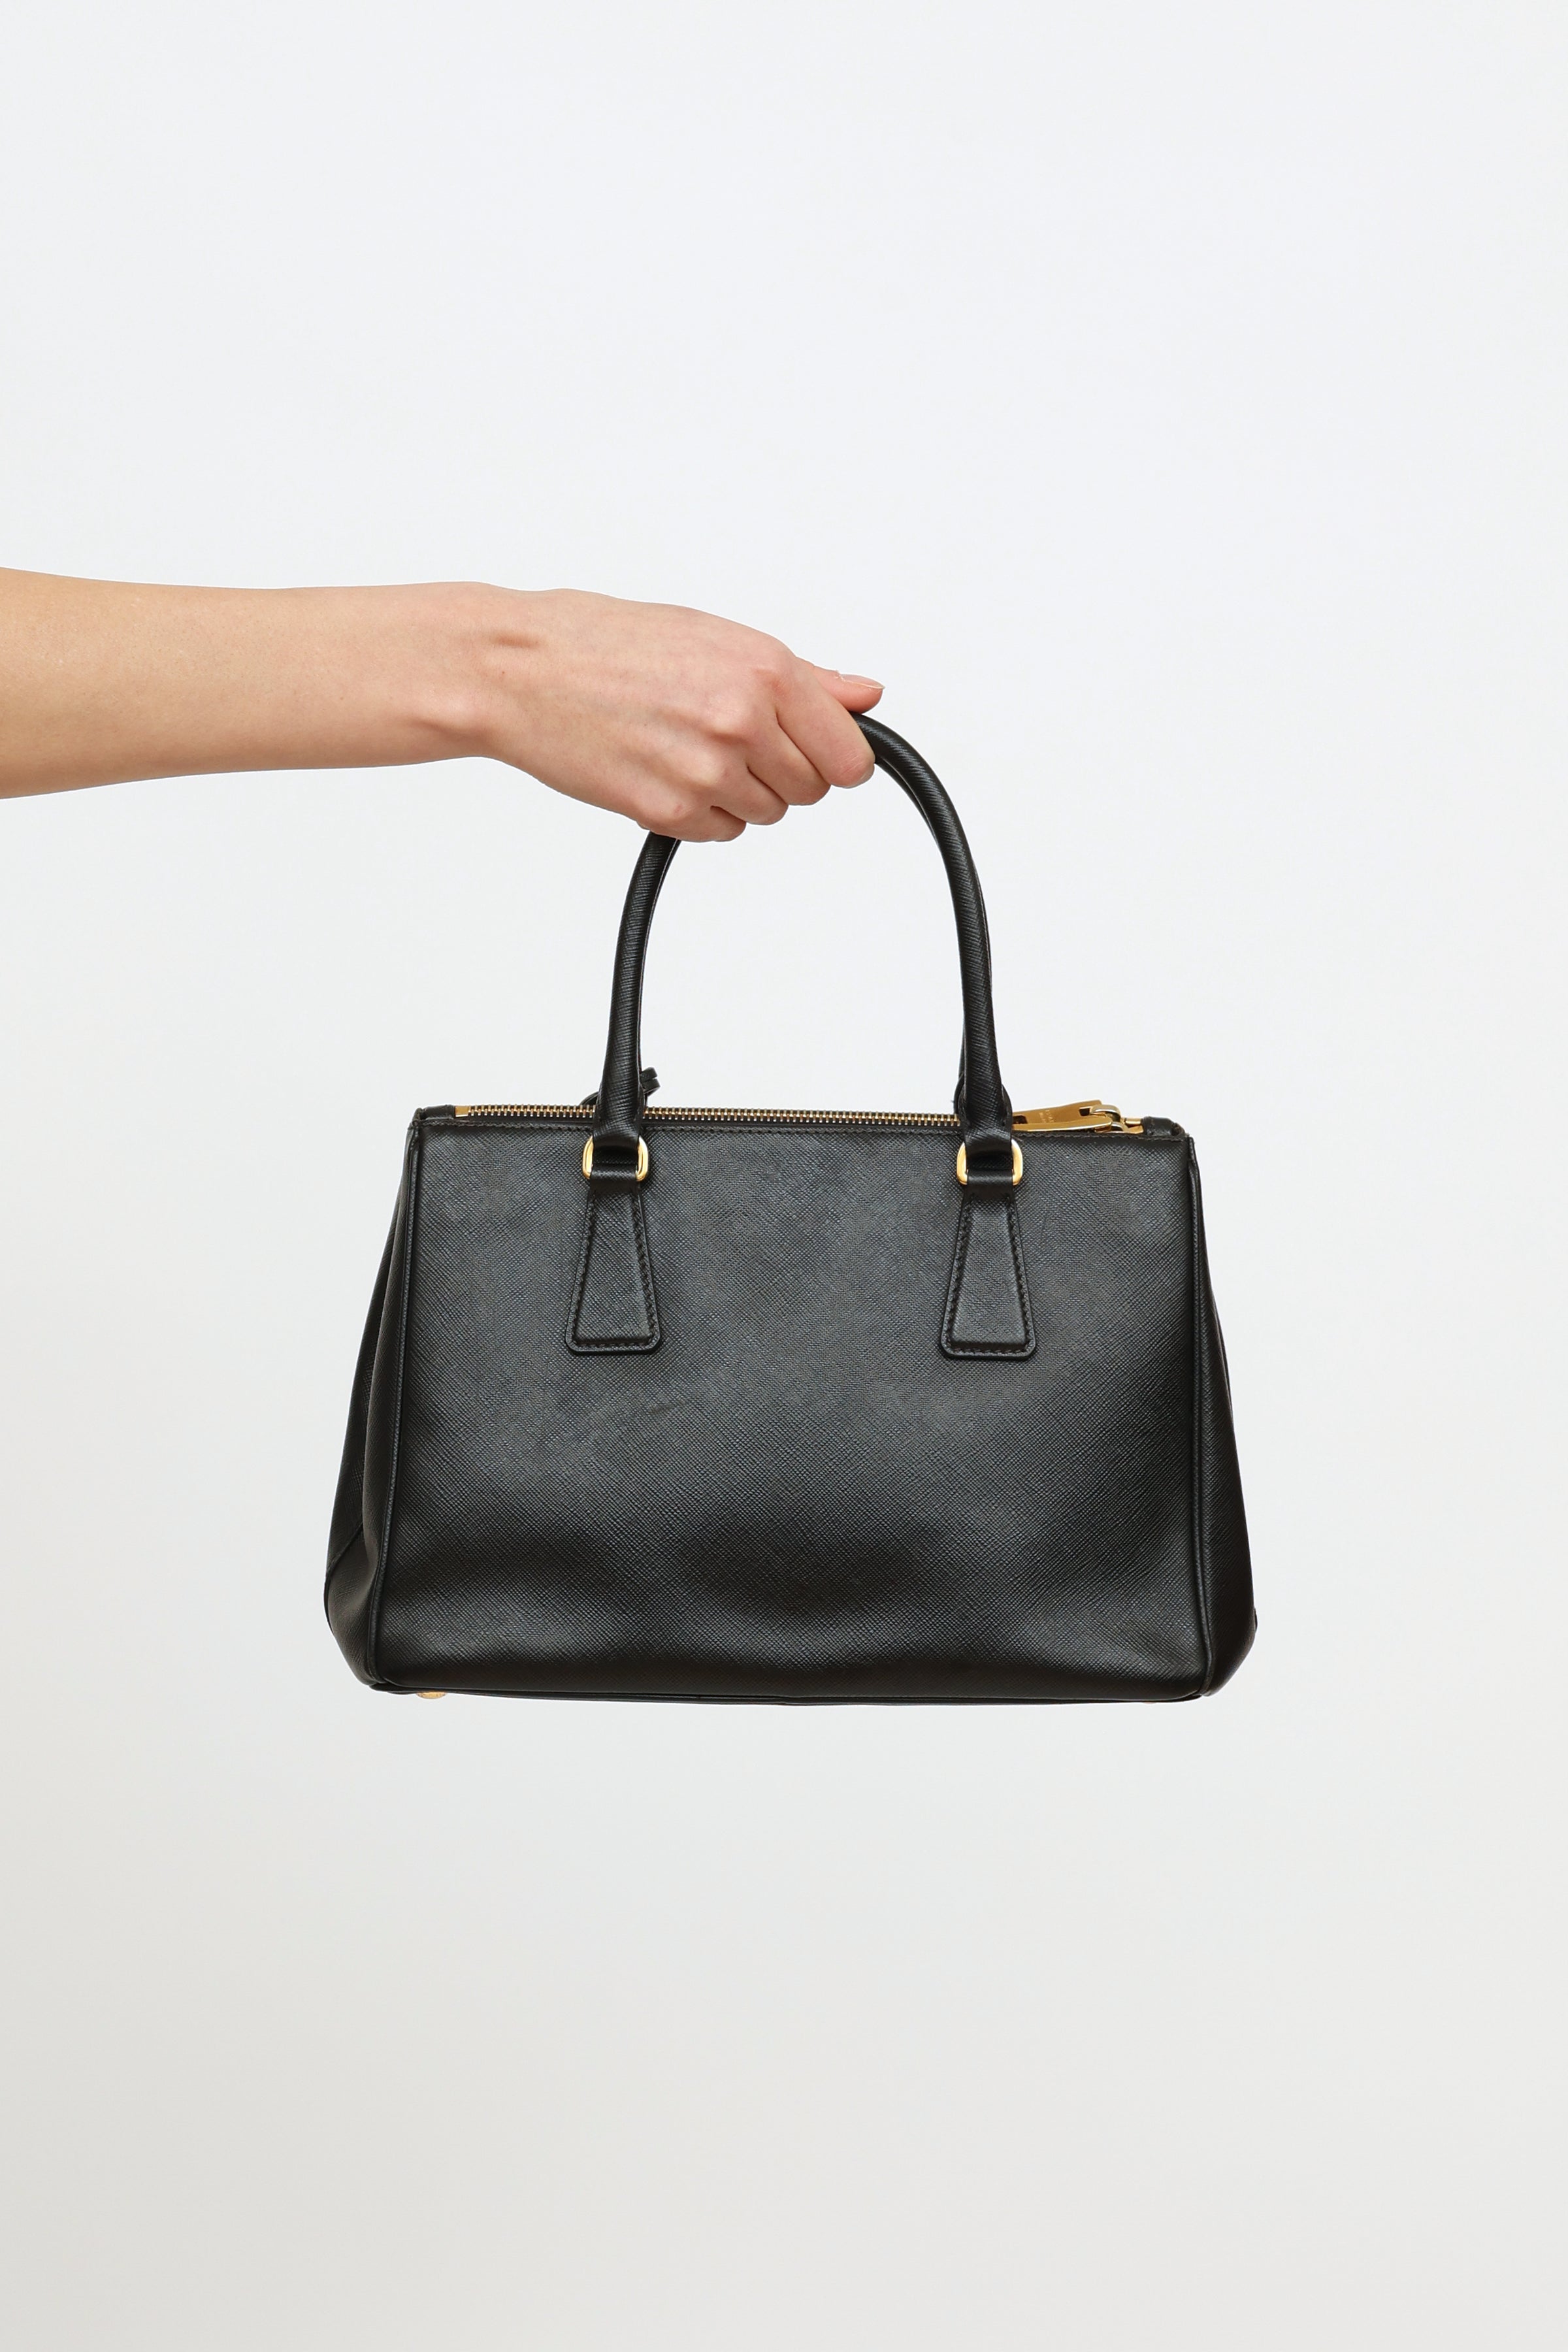 Prada Galleria Small Saffiano Leather Bag in Natural